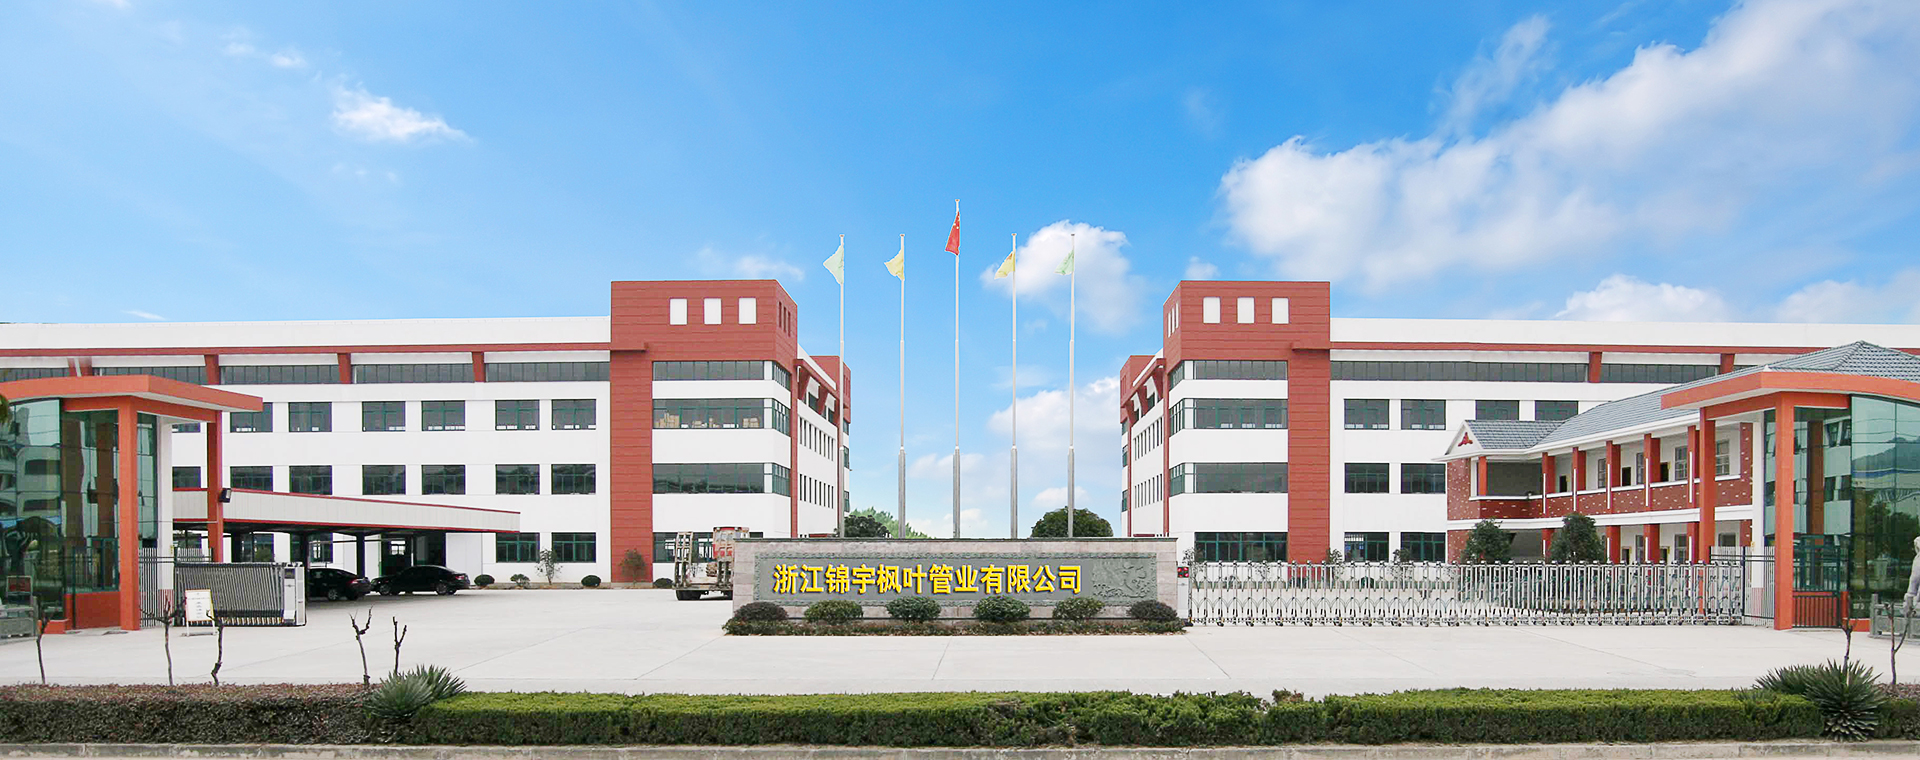 走進乾宇-Zhuji Dengjin Machinery Co., Ltd.